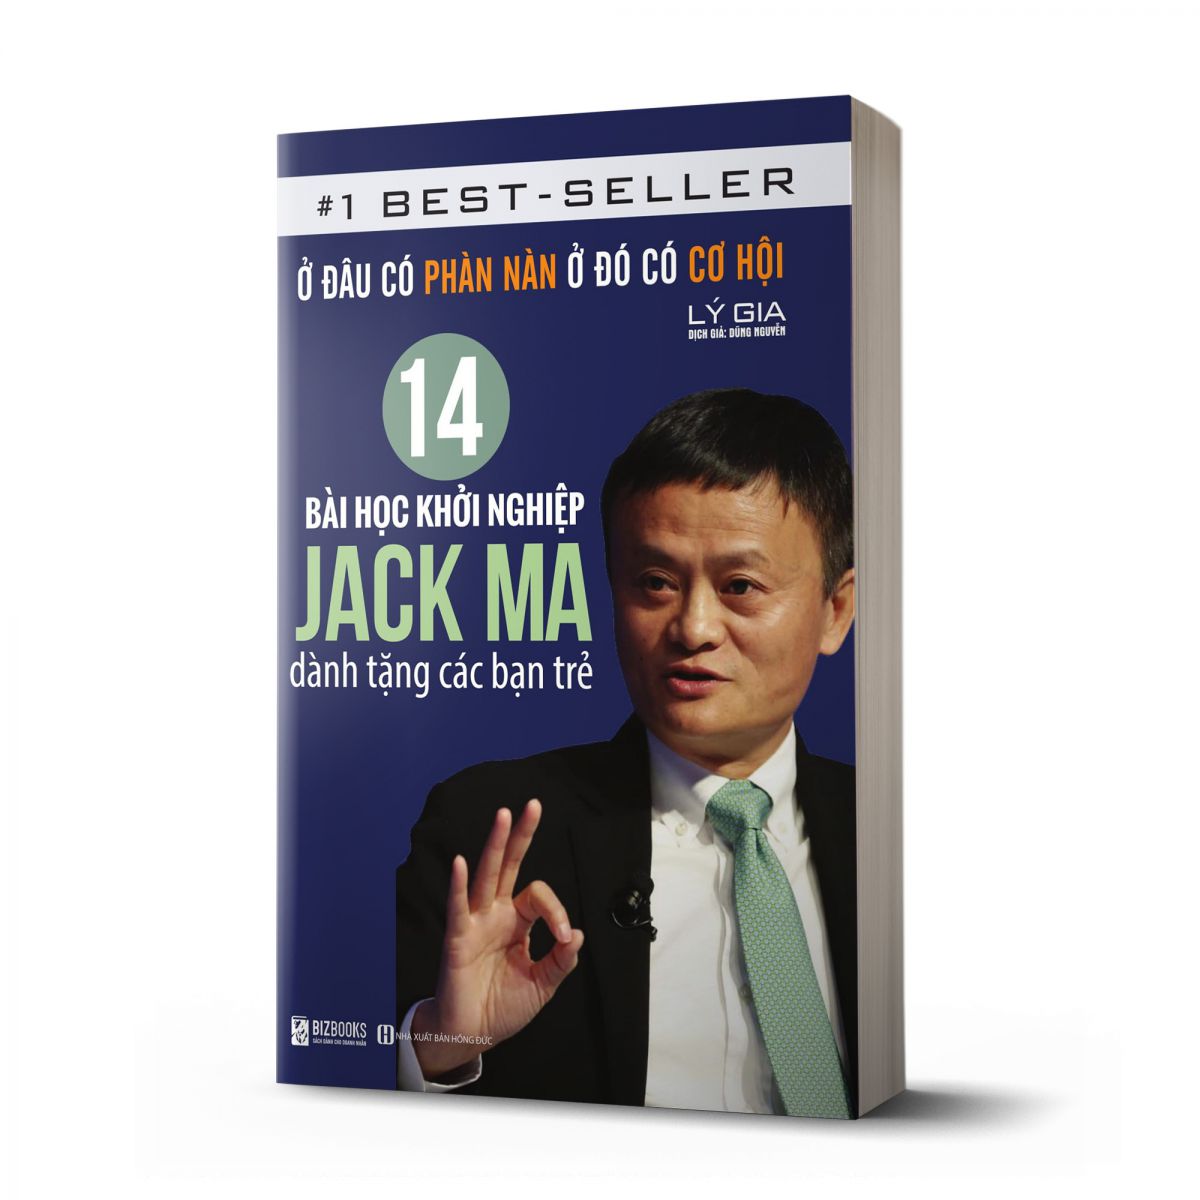 Ở đâu có phàn nàn, ở đó có cơ hội: 14 bài học khởi nghiệp Jack Ma dành tặng các bạn trẻ_ Sách hay mỗi ngày